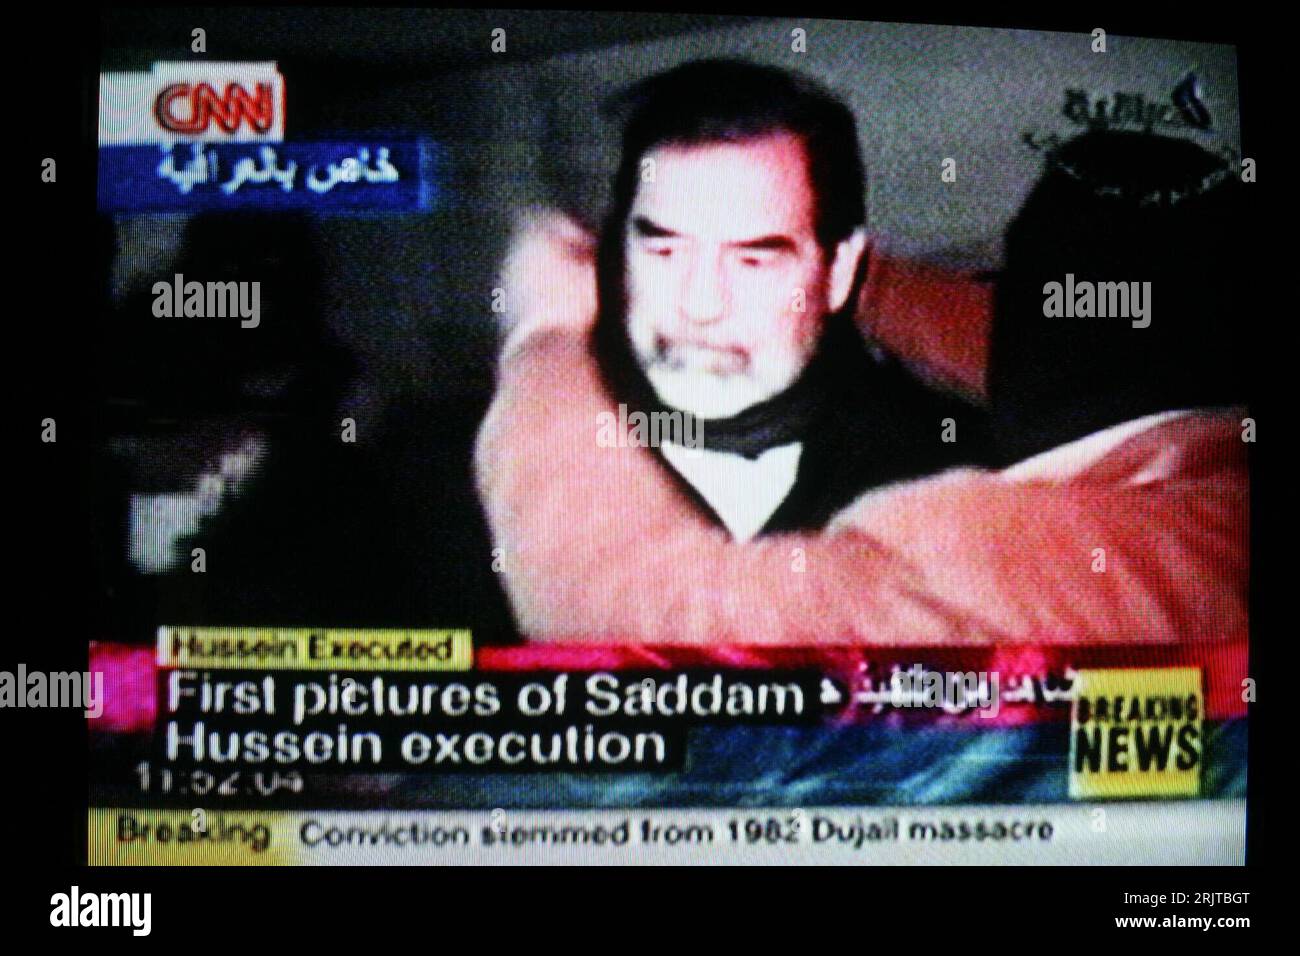 Bildnummer: 51617003  Datum: 30.12.2006  Copyright: imago/Xinhua TV-Screenshot der Hinrichtung von Saddam Hussein (IRQ) - gesendet auf CNN - PUBLICATIONxNOTxINxCHN, Personen; 2006, Peking, Politik, Politiker, Exekution, Fernsehen, Fernsehübertragung, Screenshots, Todesstrafe, hängen, Erhängung, Erhängungen, Exekutionen, erhängen, aufhängen, Schriftzug, first pictures of Saddam Hussein execution; , quer, Kbdig, Einzelbild, China, Randbild, Justiz, Staat, People Stock Photo